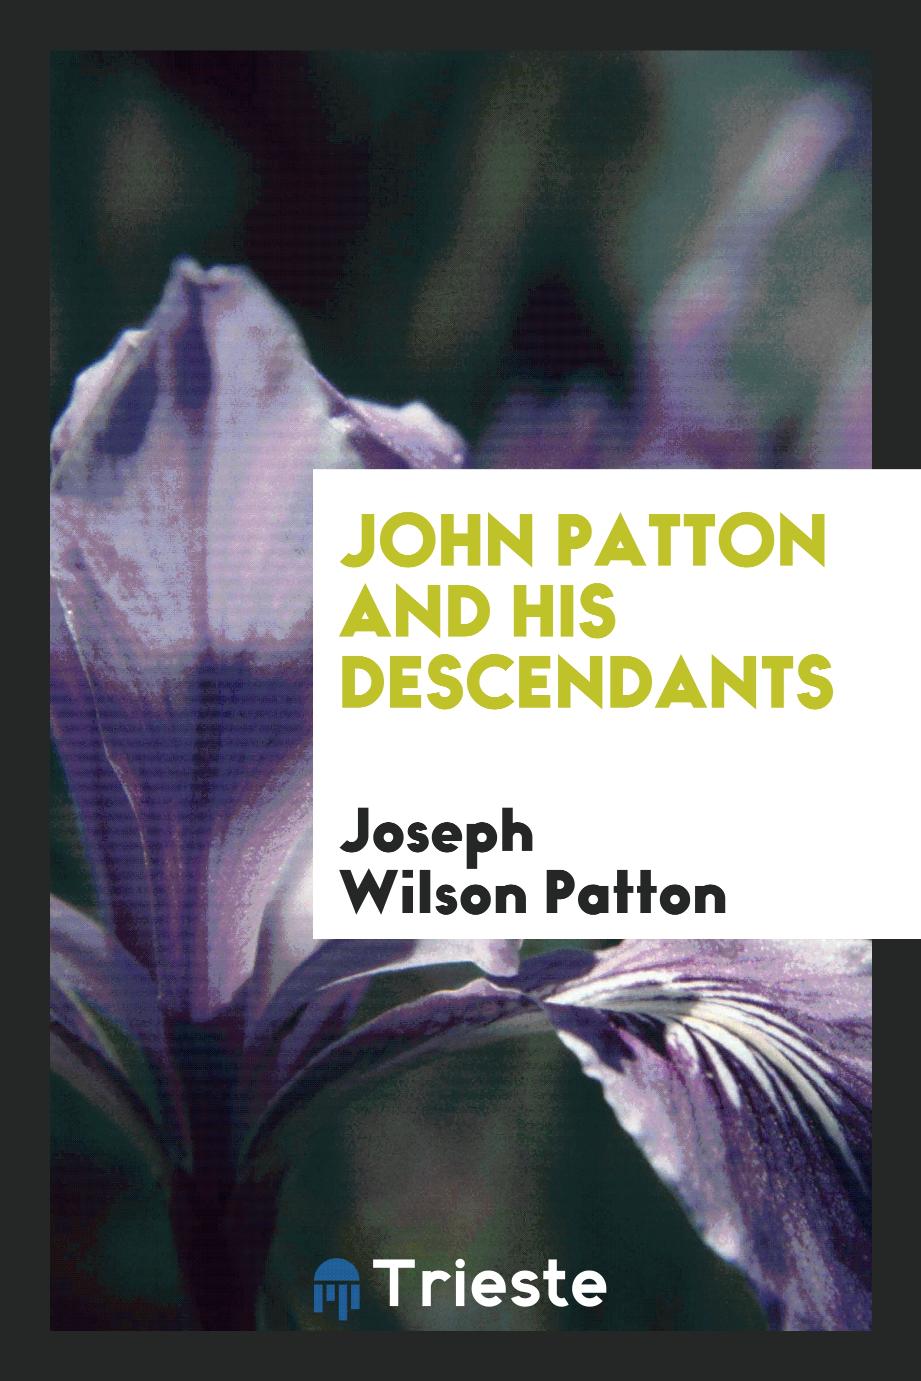 John Patton and his descendants